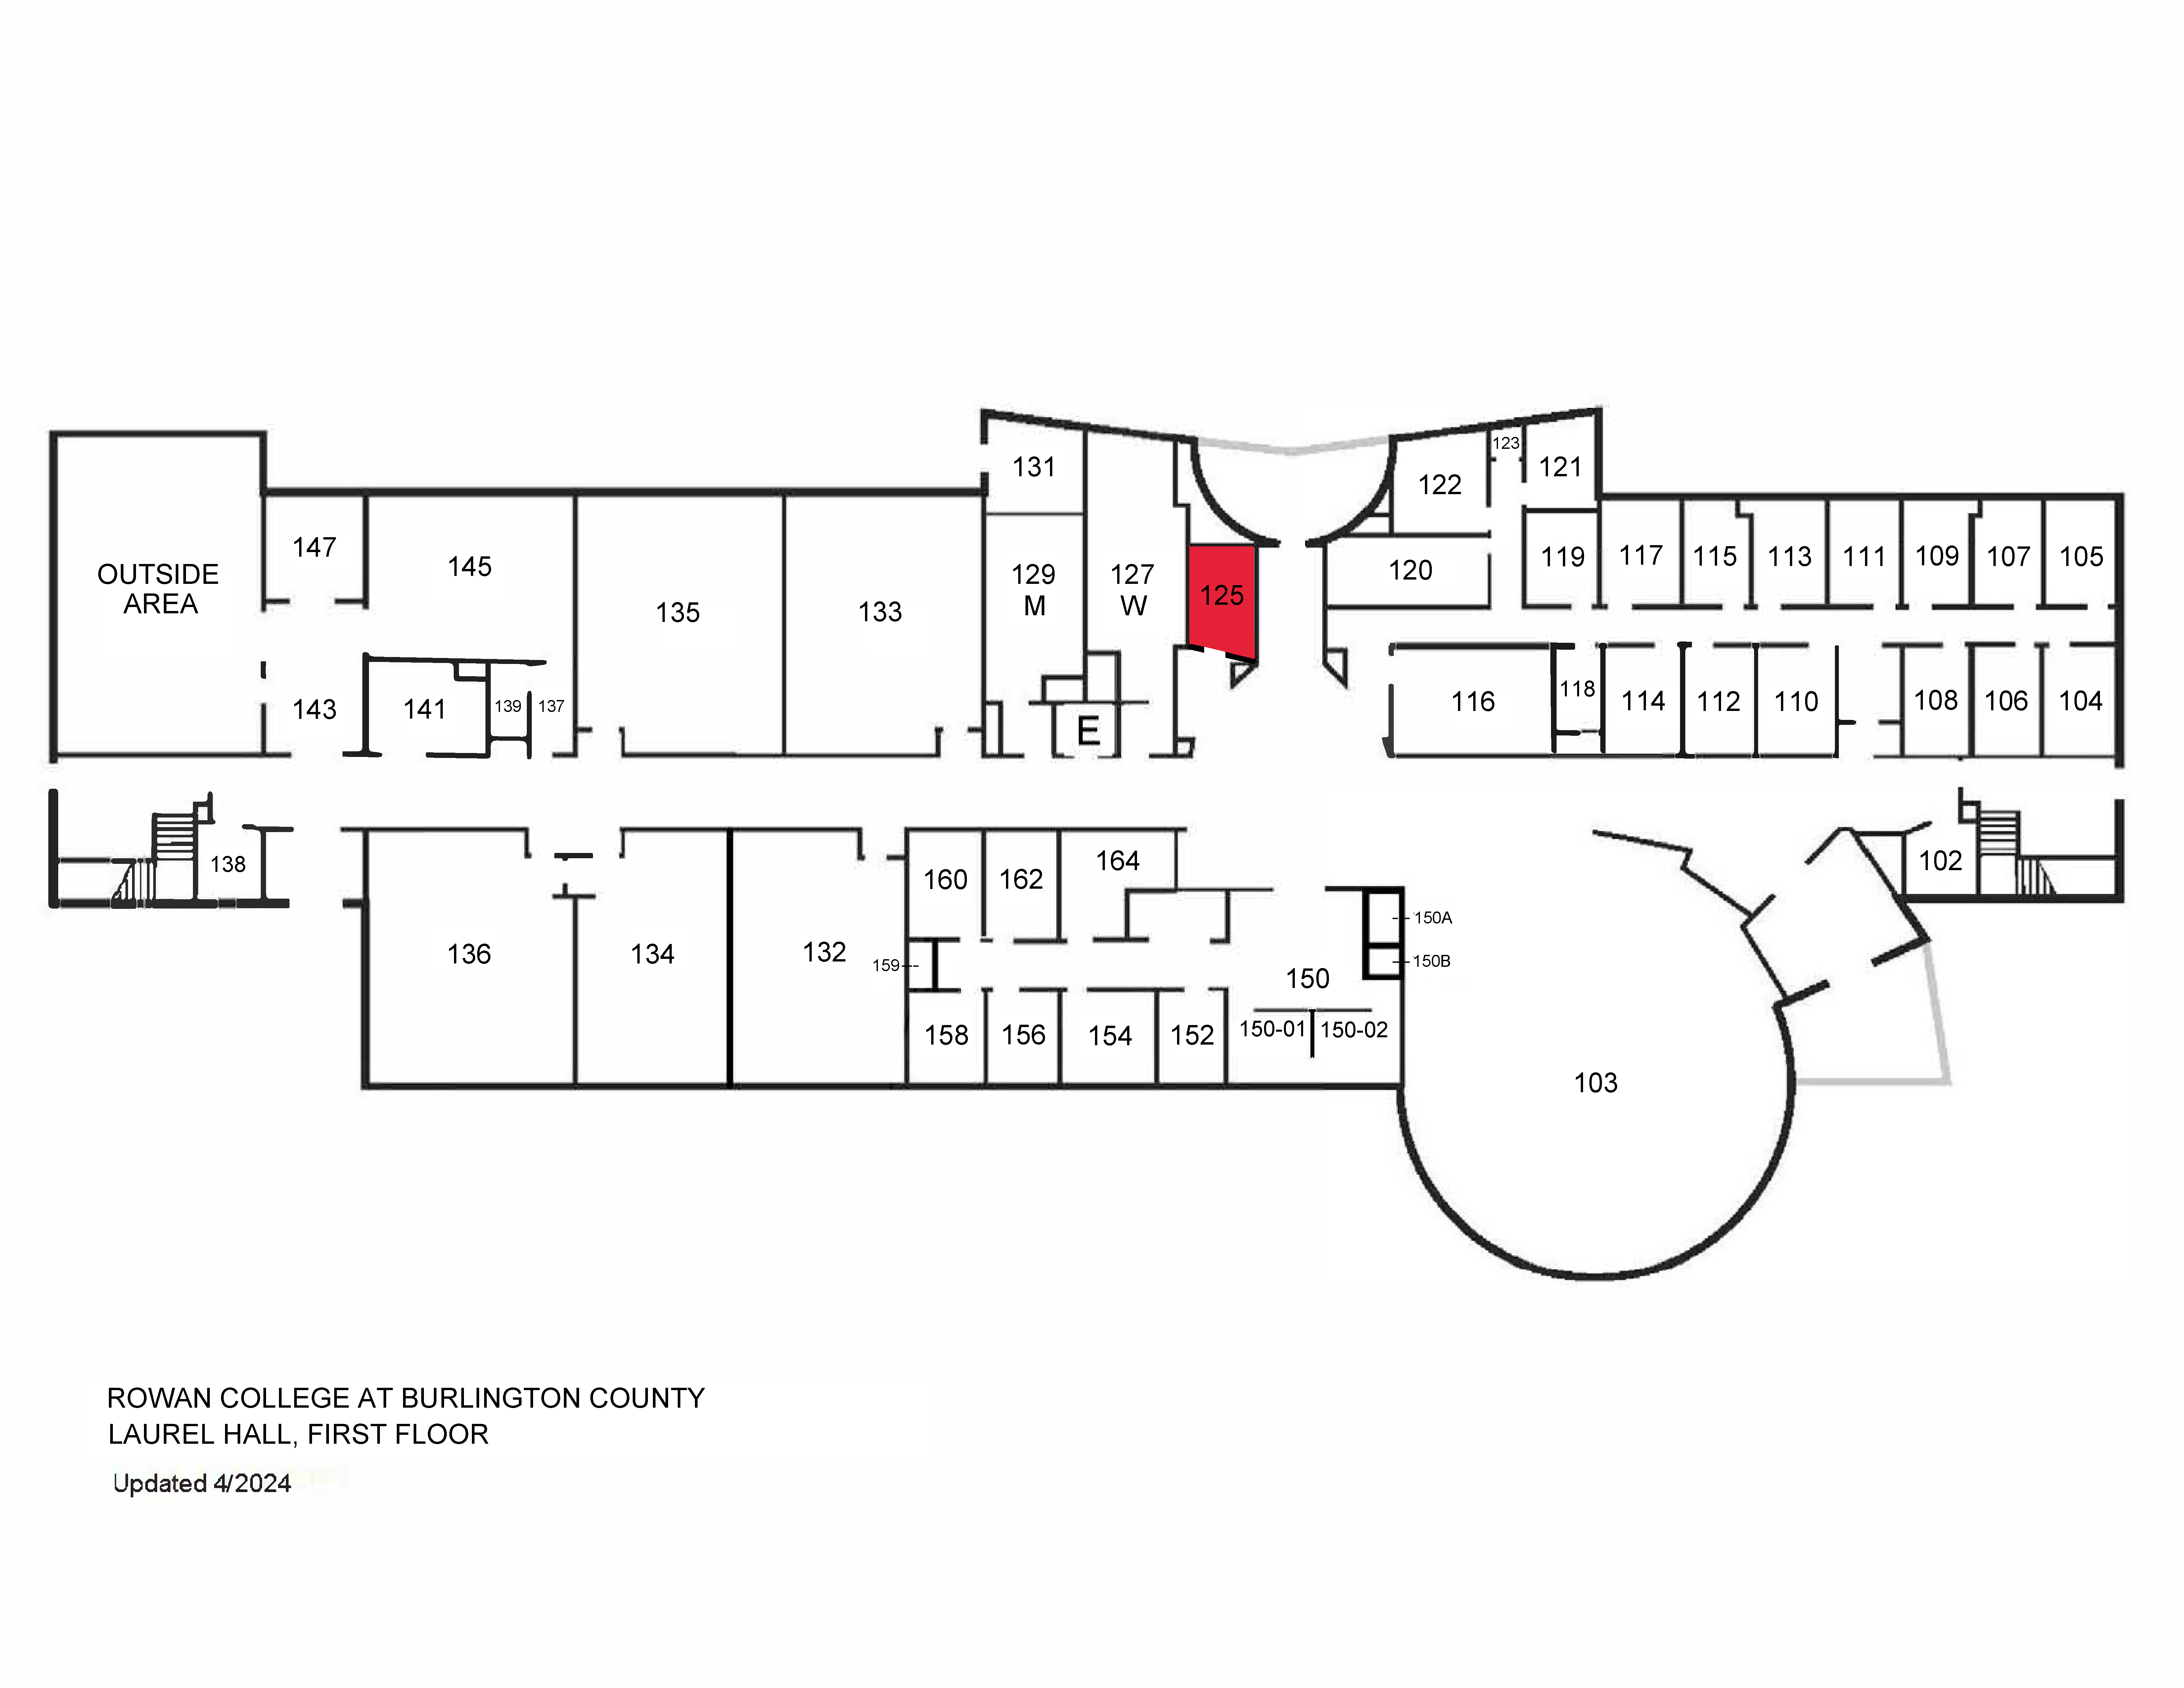 Laurel Hall floor plan highlighting lactation room (LH 125)